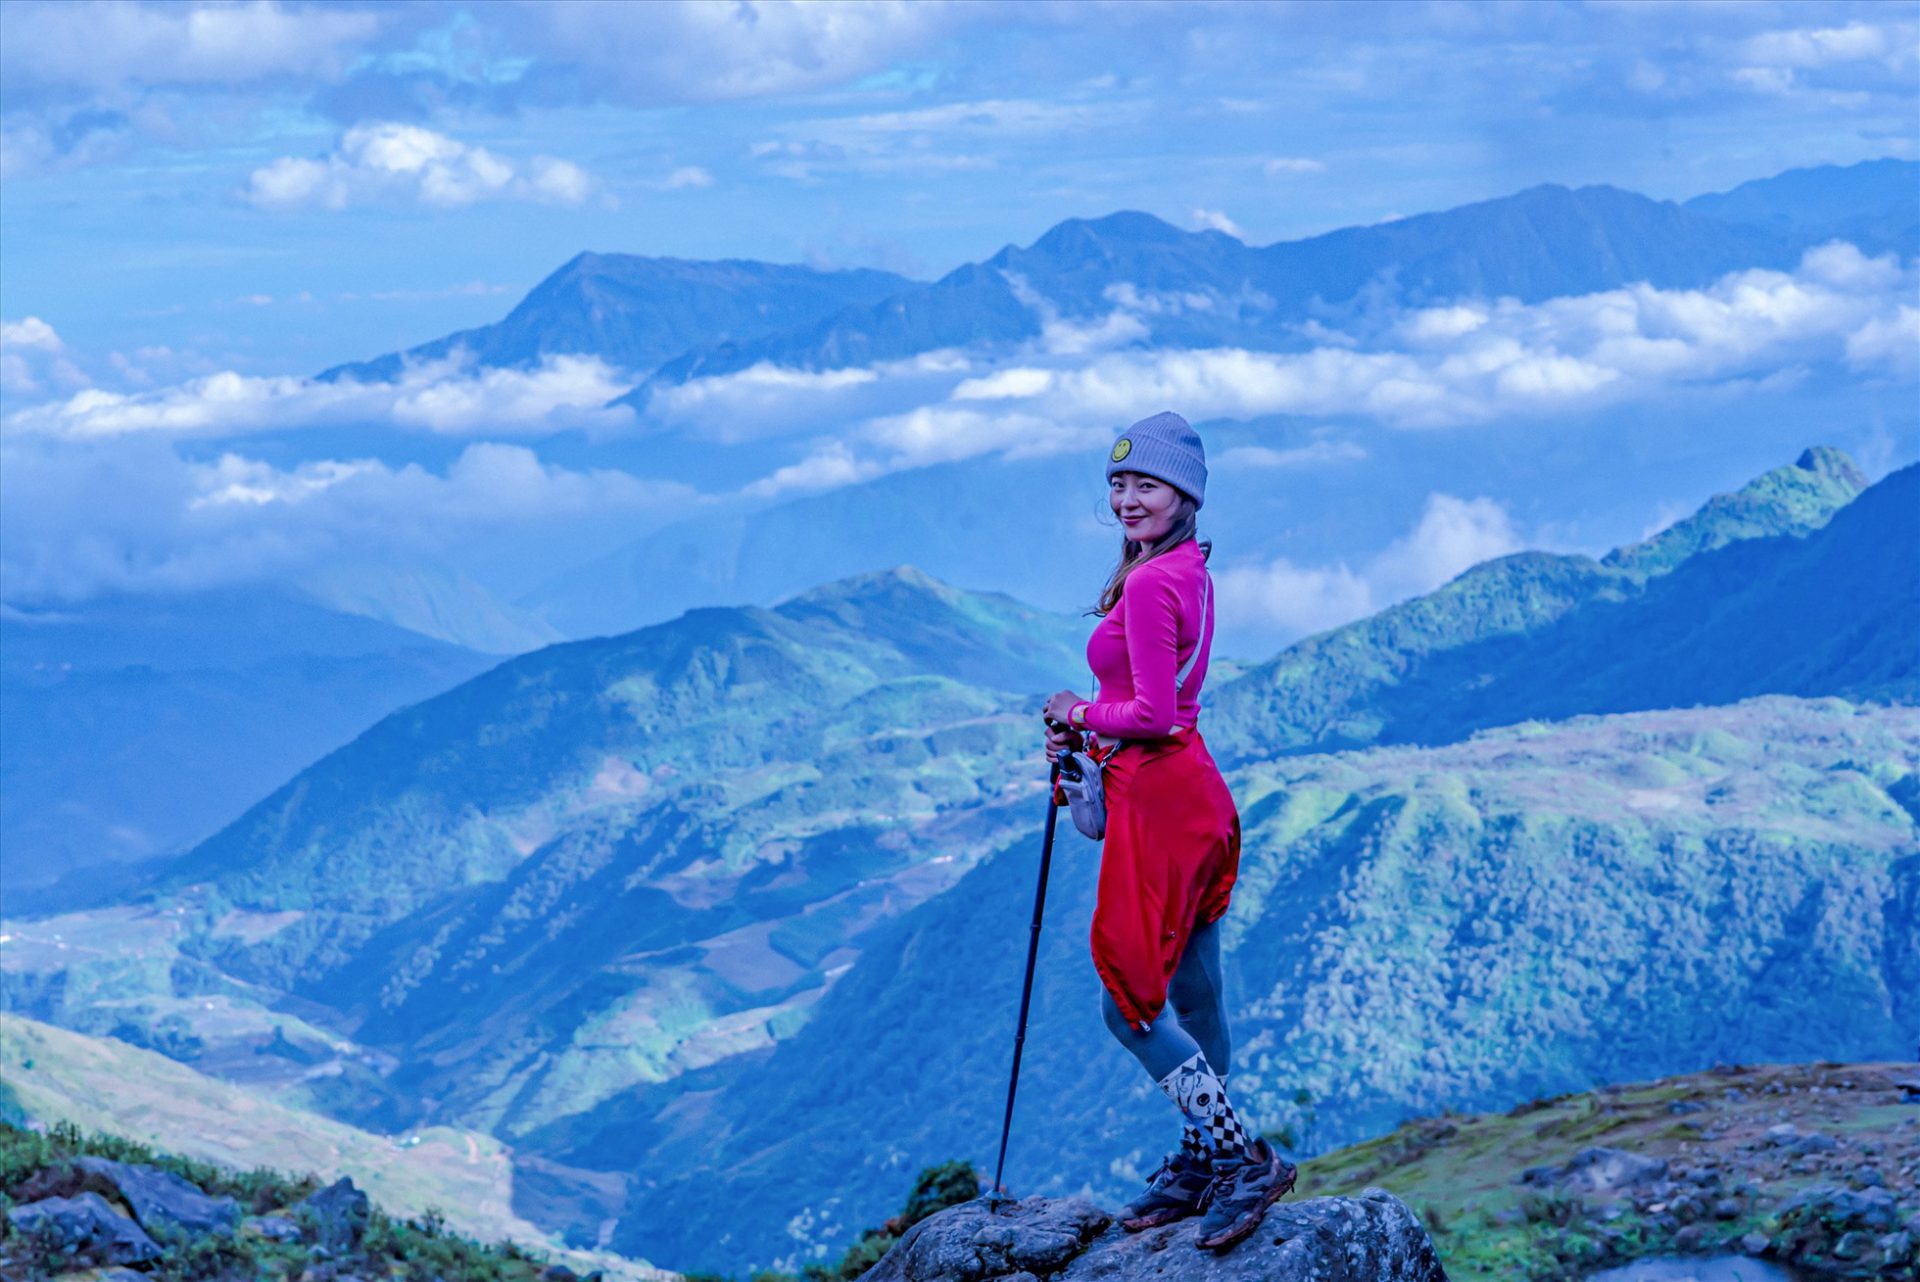 Blogger Hoàng Thùy Dương vừa có hành trình trekking Nhìu Cồ San trong hai ngày một đêm. “Đến đây không chỉ được trải nghiệm cảm giác săn mây mà còn được mở rộng thế giới quan trong hành trình trekking lên đỉnh núi“, Thùy Dương chia sẻ.